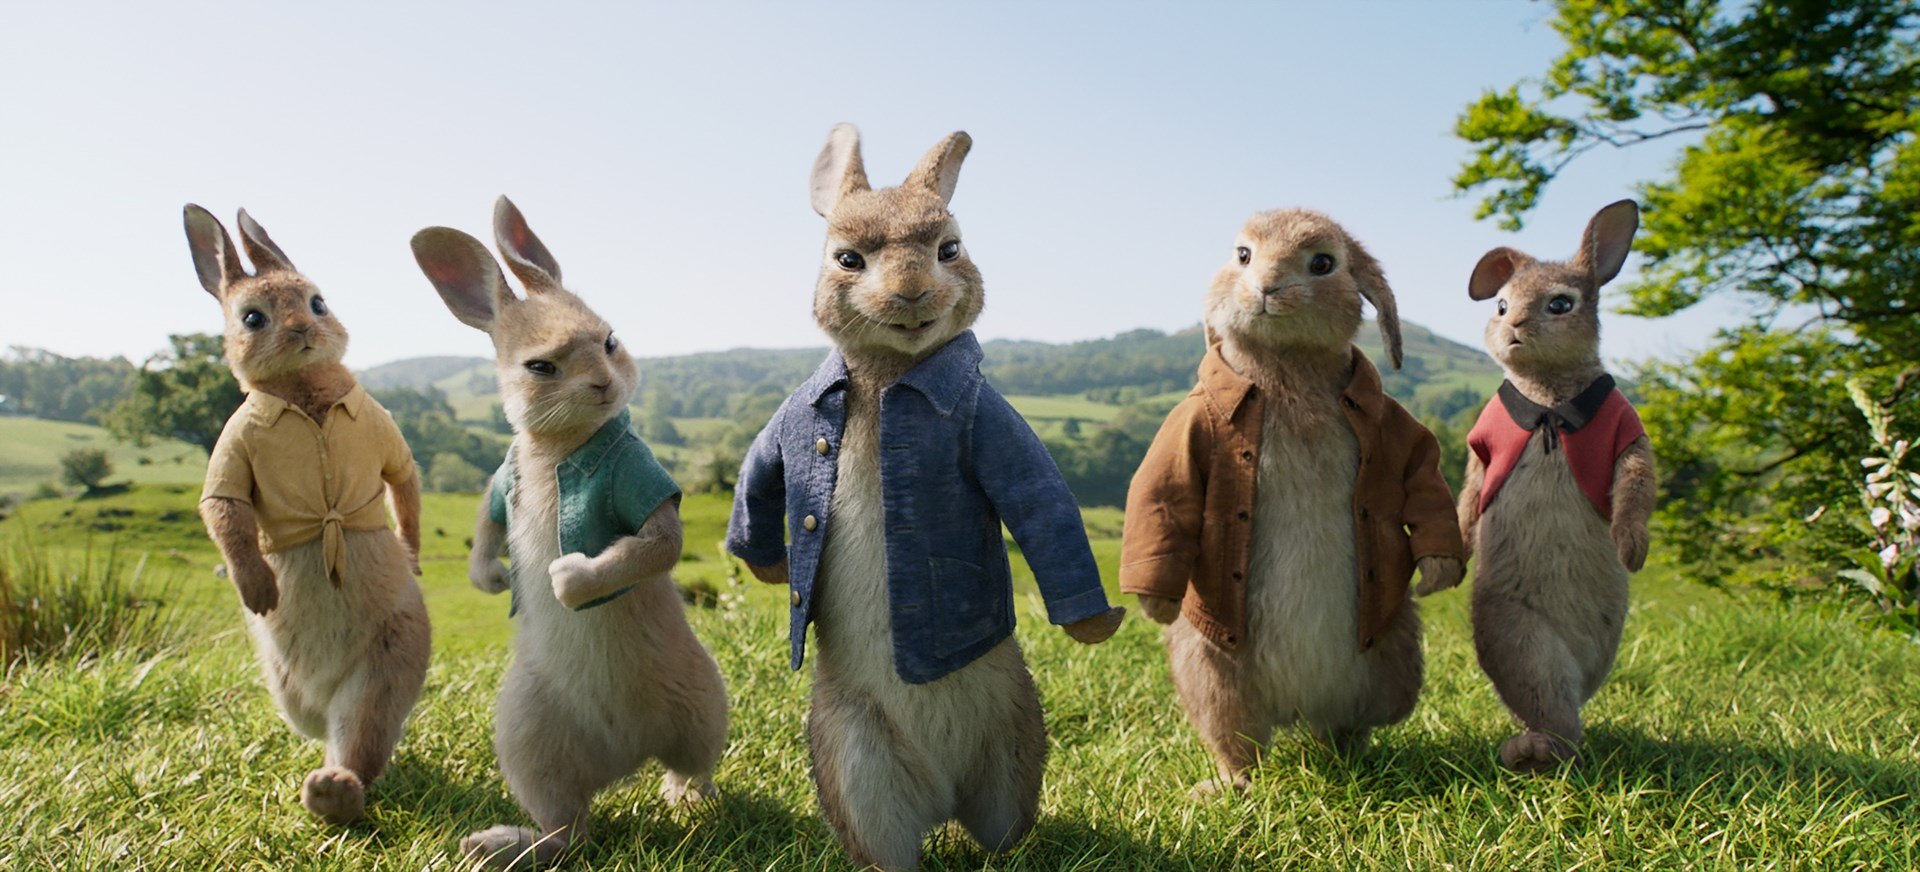 peter rabbit movie ile ilgili gÃ¶rsel sonucu